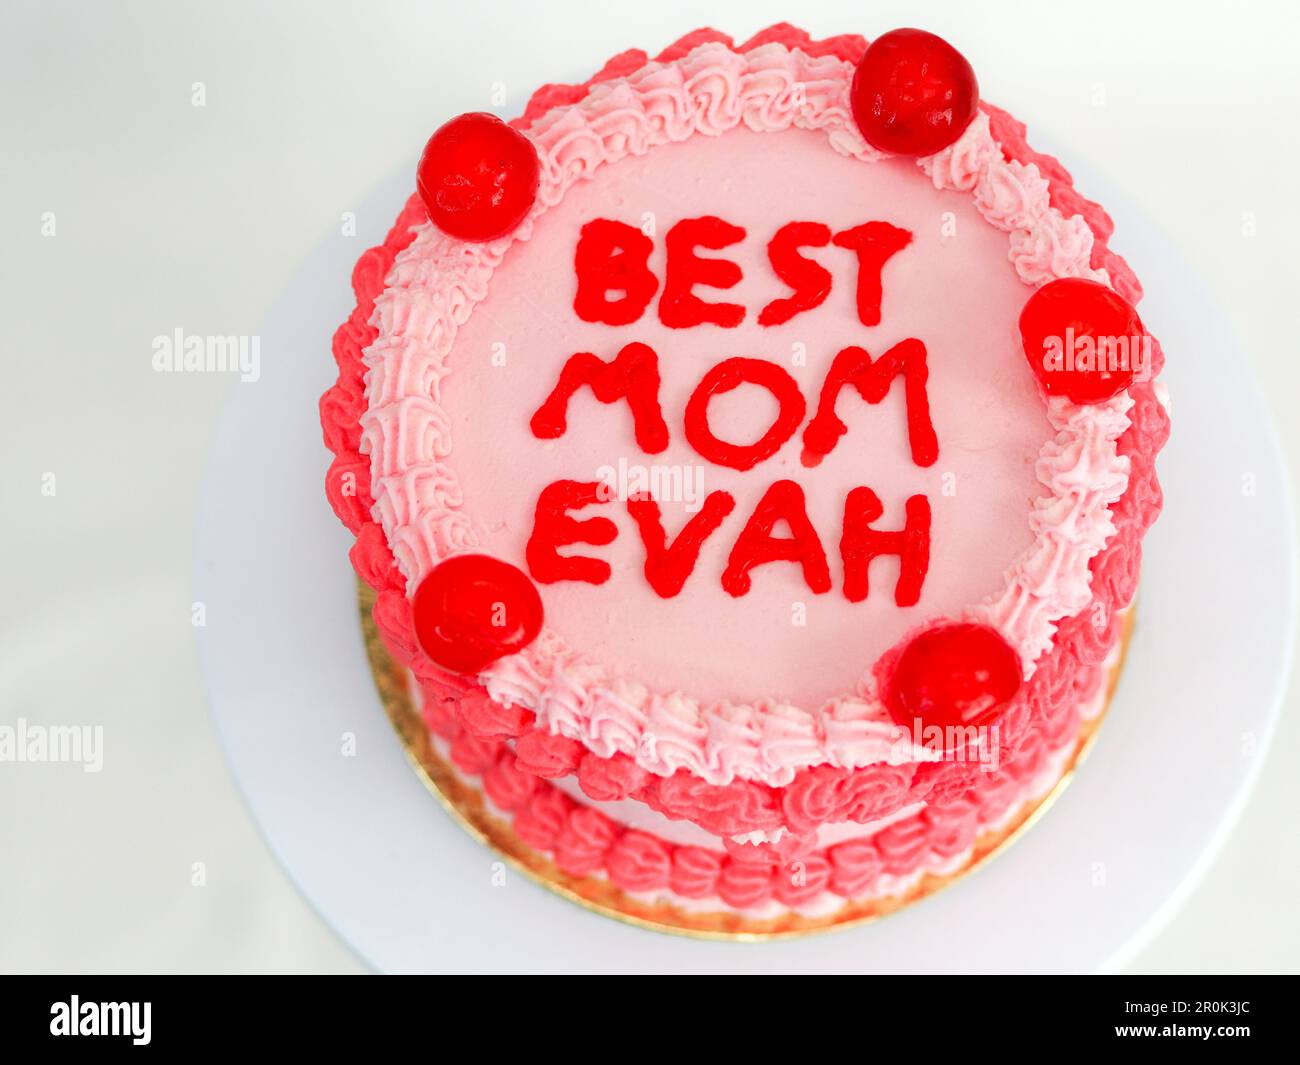 gâteau rouge rose givré pour la fête des mères avec un texte amusant garniture meilleure maman evah sur fond blanc studio Banque D'Images